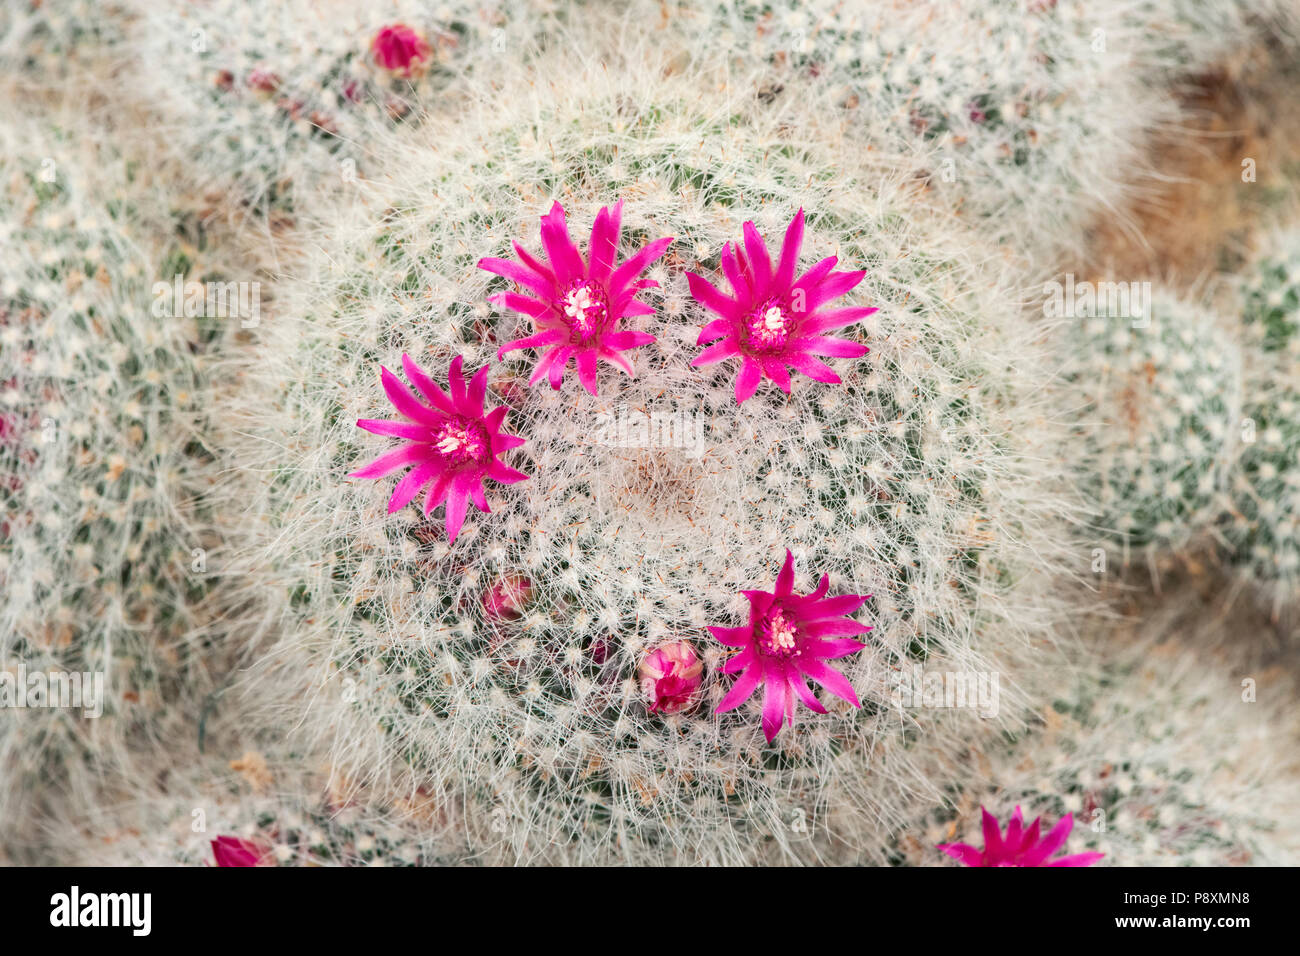 Mammillaria Hahniana cactus flowering. Old Lady Cactus cactus Stock Photo